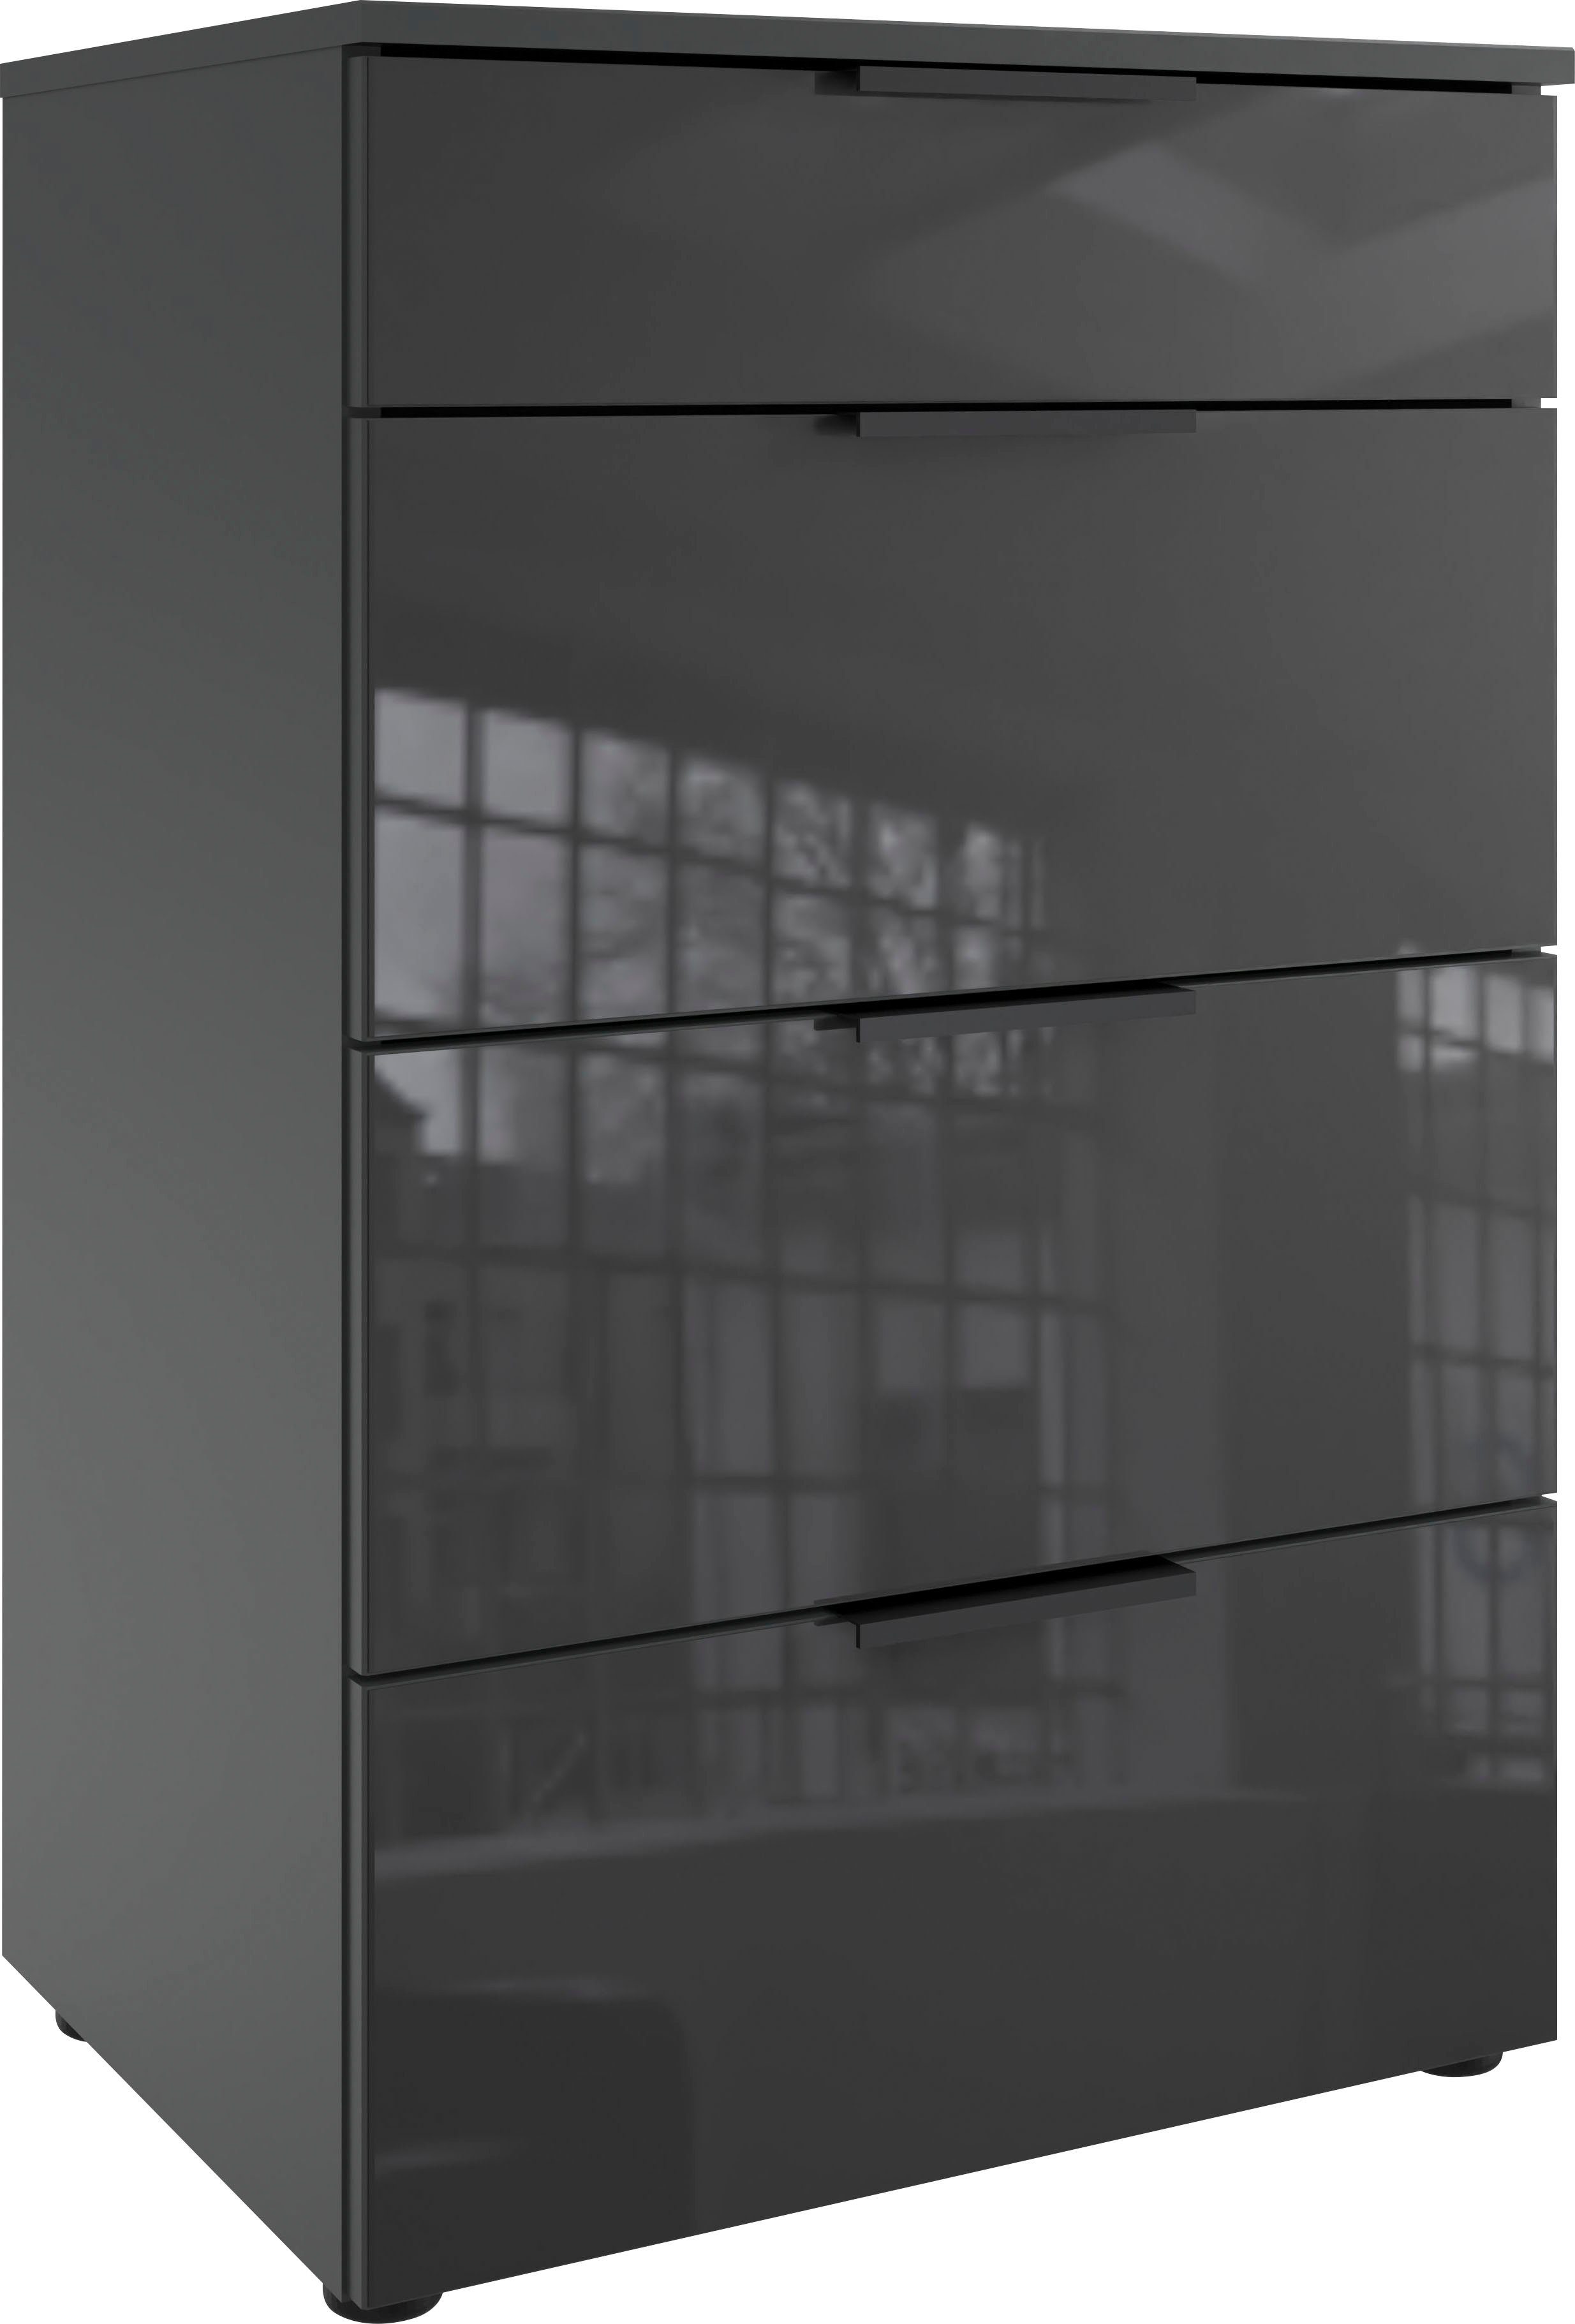 Wimex Ladekast Level36 black C by fresh to go met glazen elementen aan de voorkant, soft-close functie, 54 cm breed